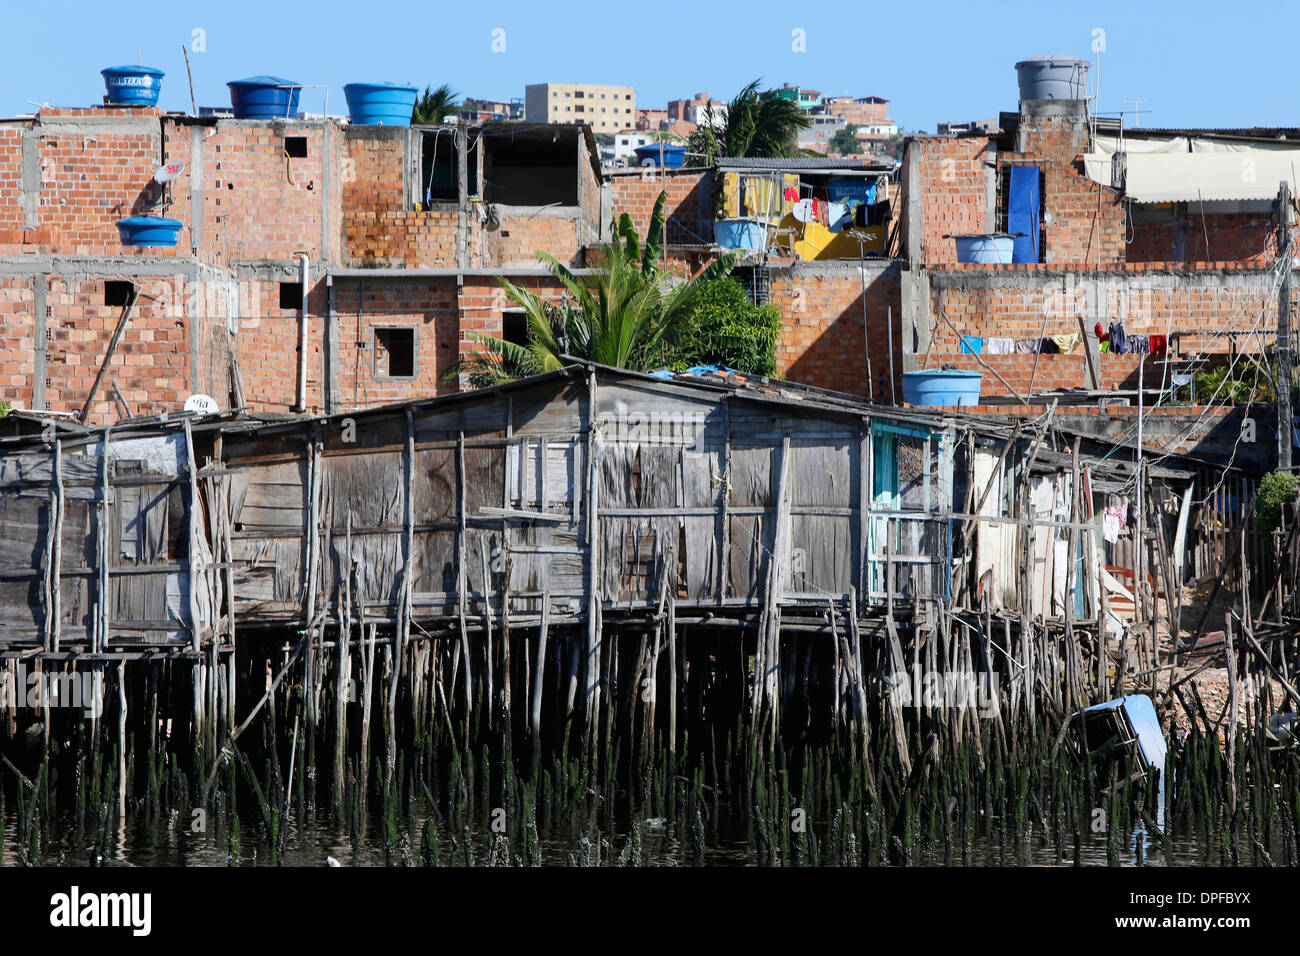 Alagados favela in Salvador, Bahia, Brazil, South America Stock Photo